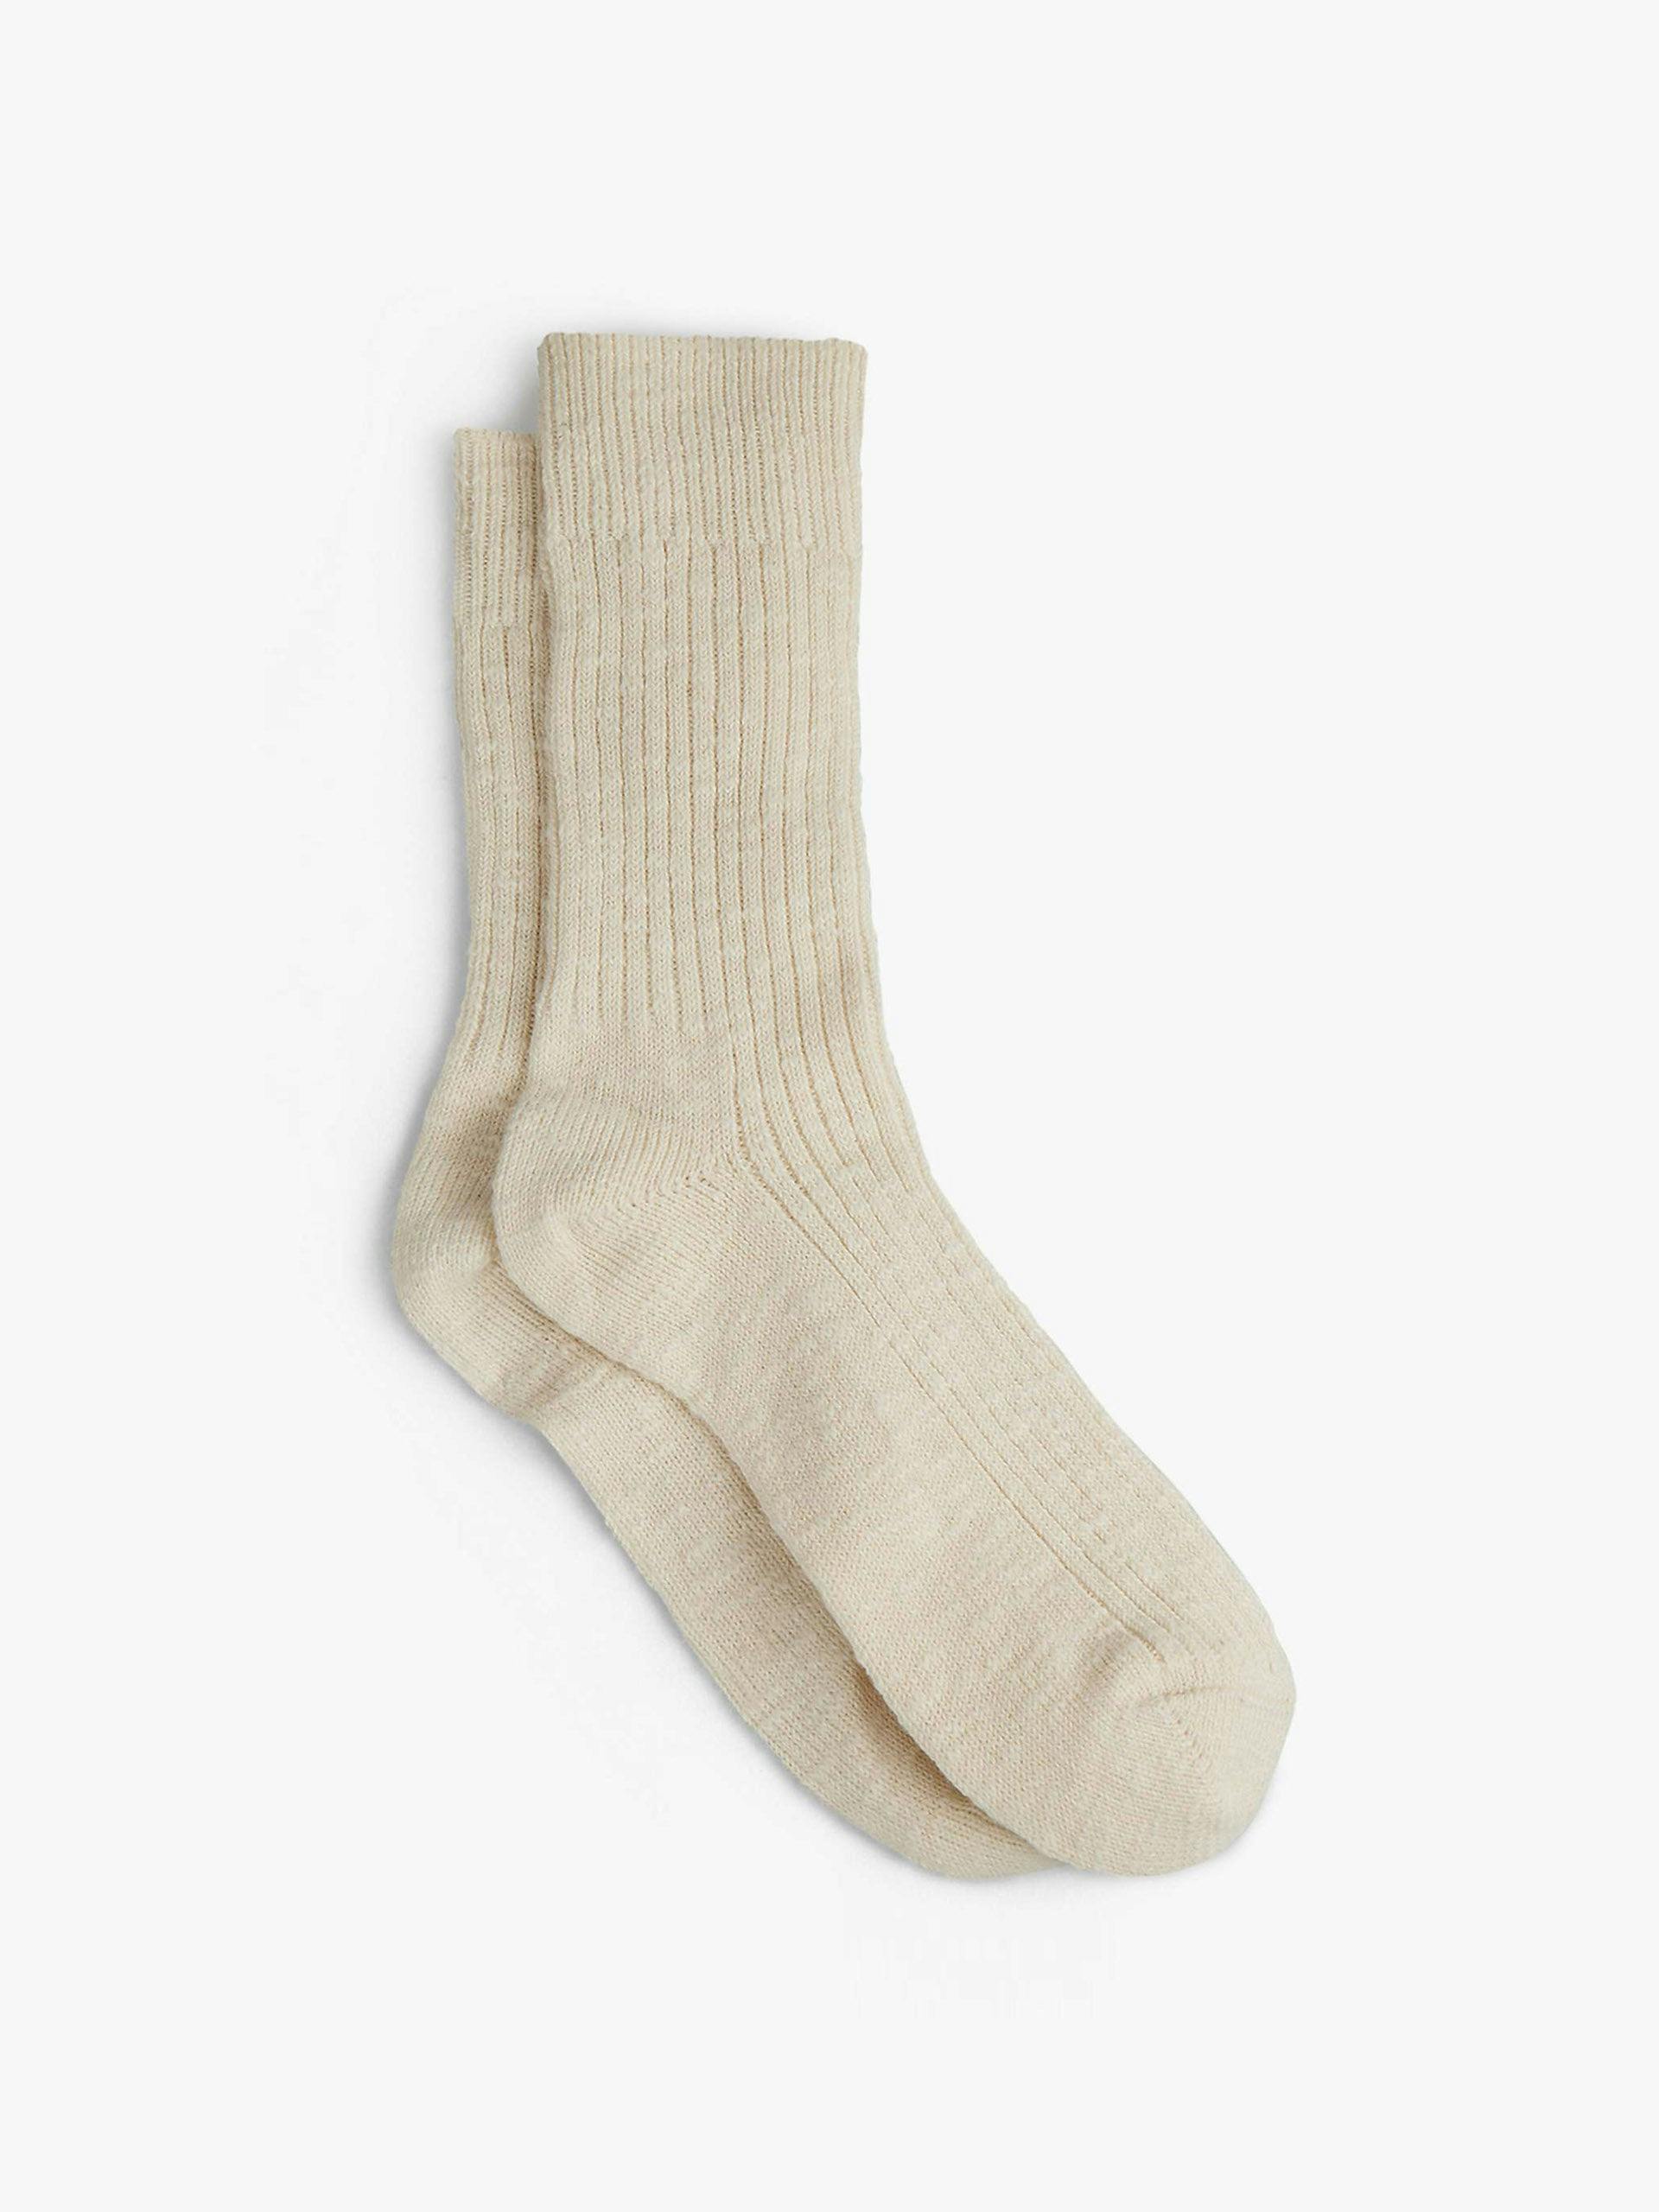 Cali cotton twist socks